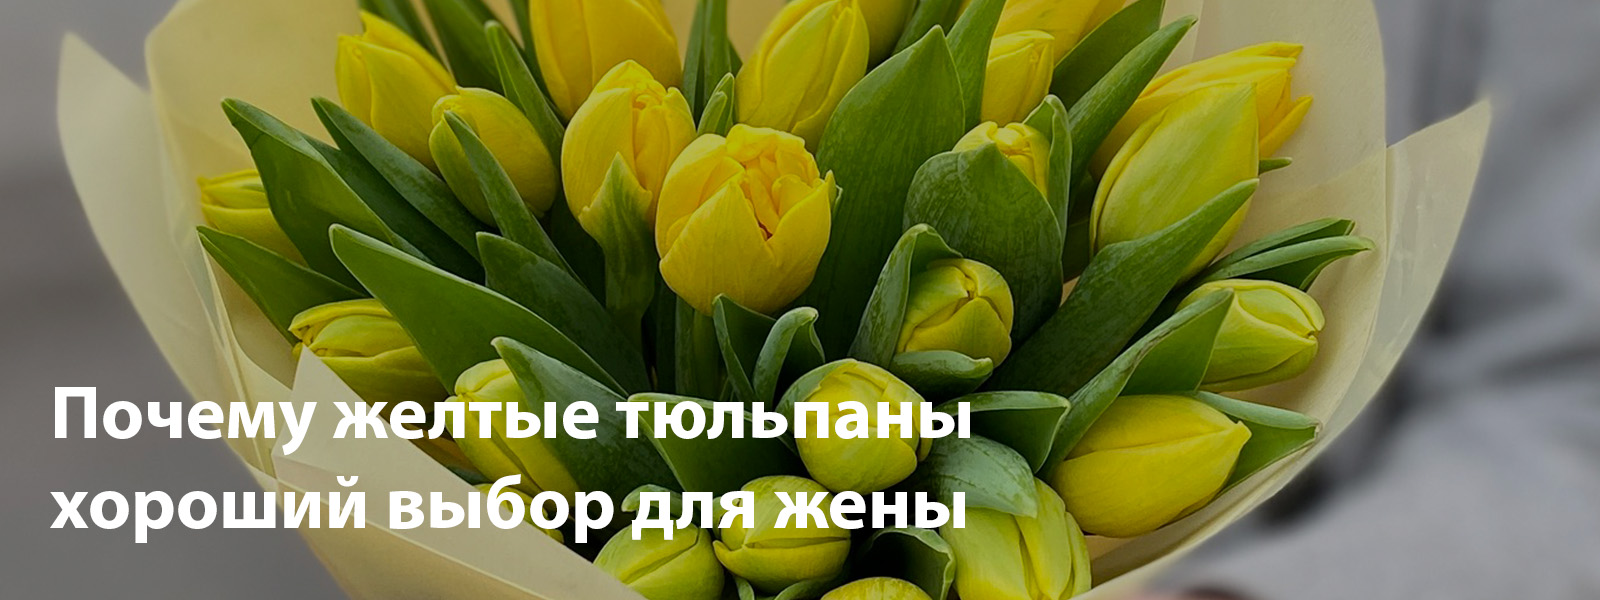 Почему желтые тюльпаны хороший выбор для жены